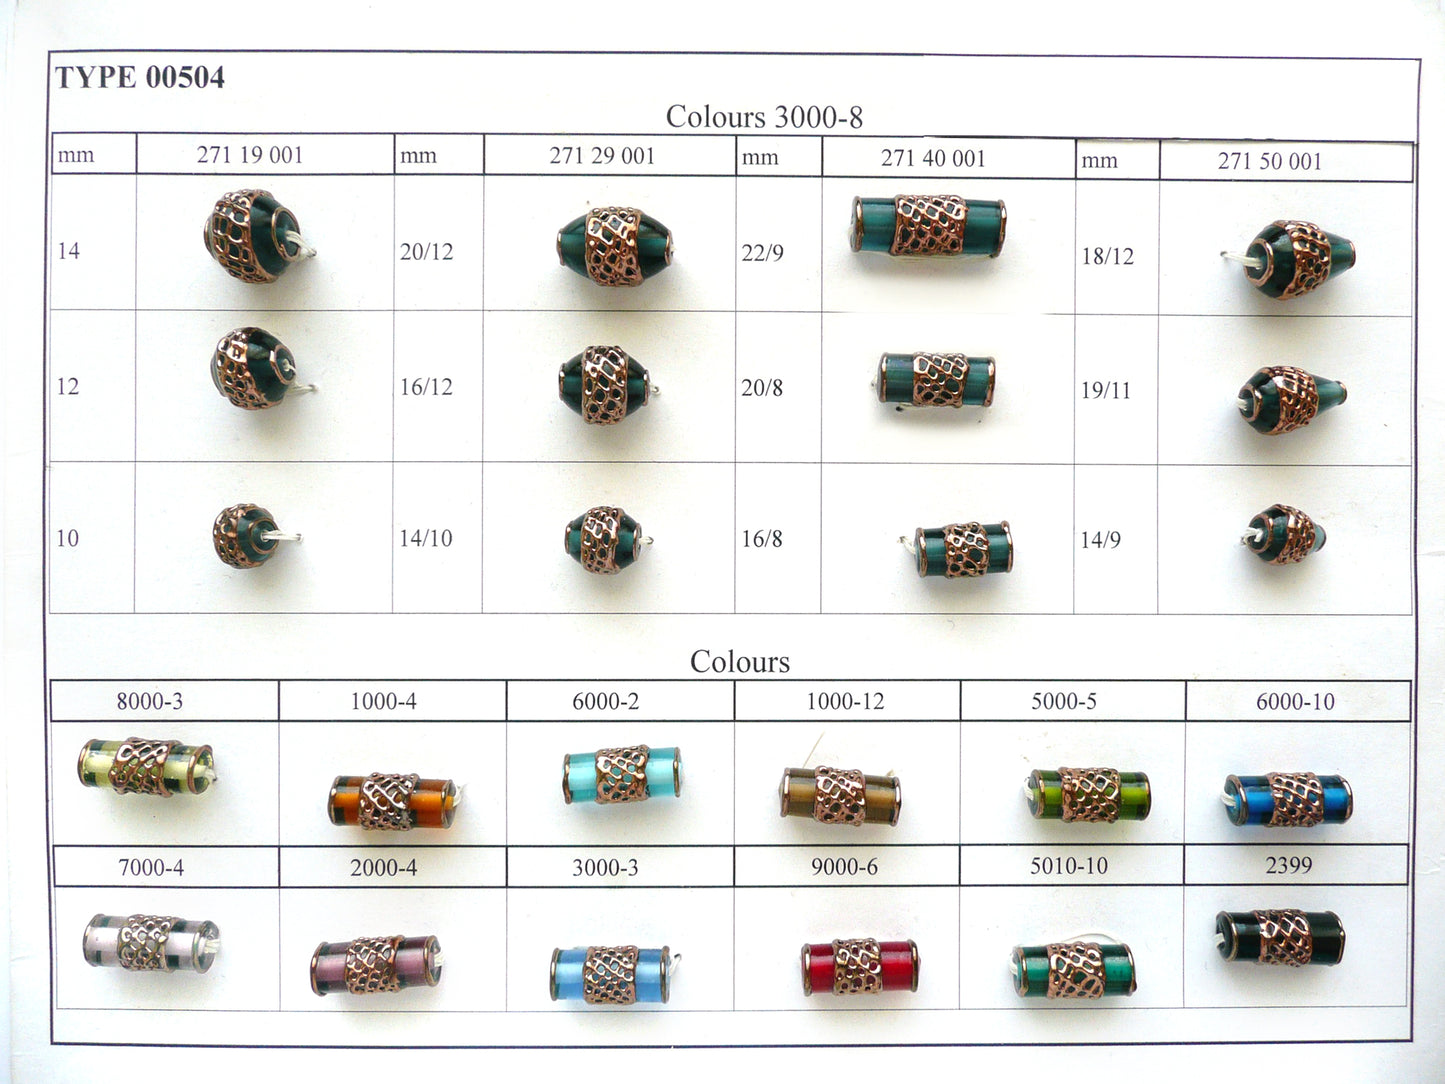 30 pcs Lampwork Beads 504 / Cylinder (271-40-001), Handmade, Preciosa Glass, Czech Republic